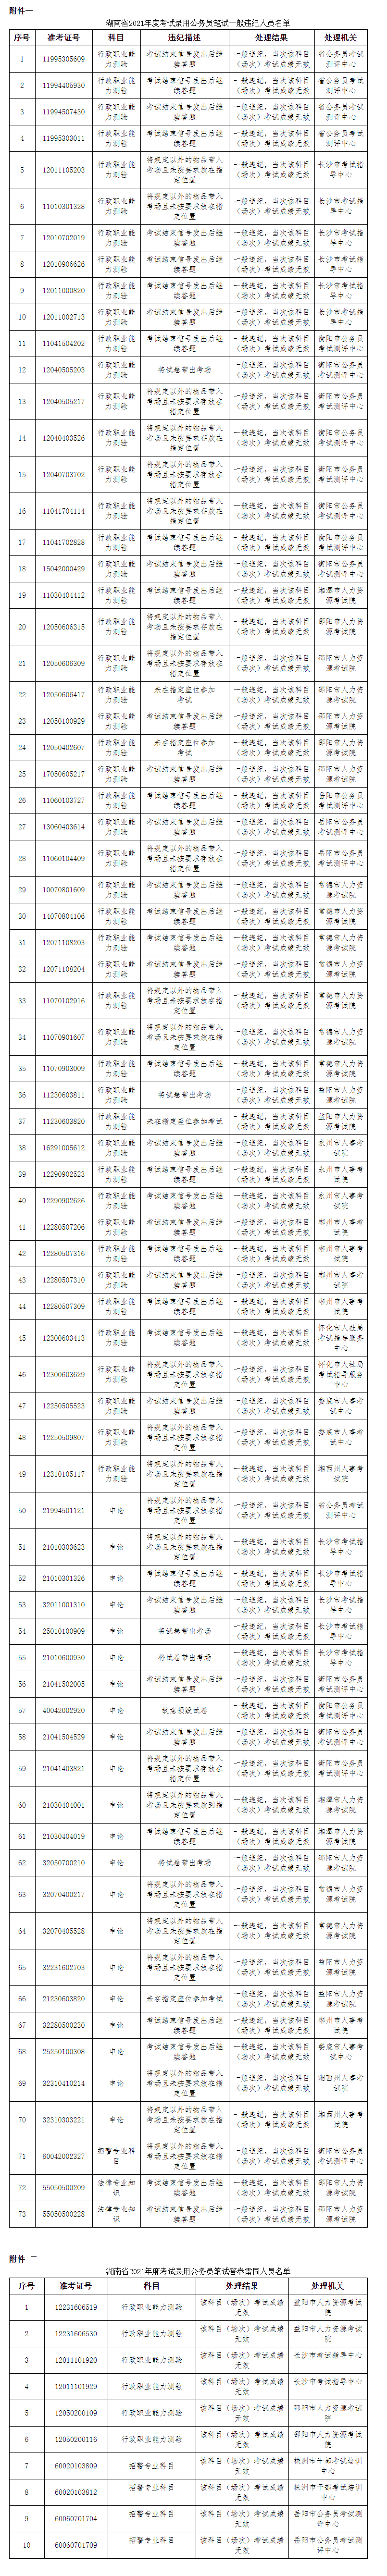 湖南公务员考试73人存违纪违规、弊被10人被认定答卷雷同被处理